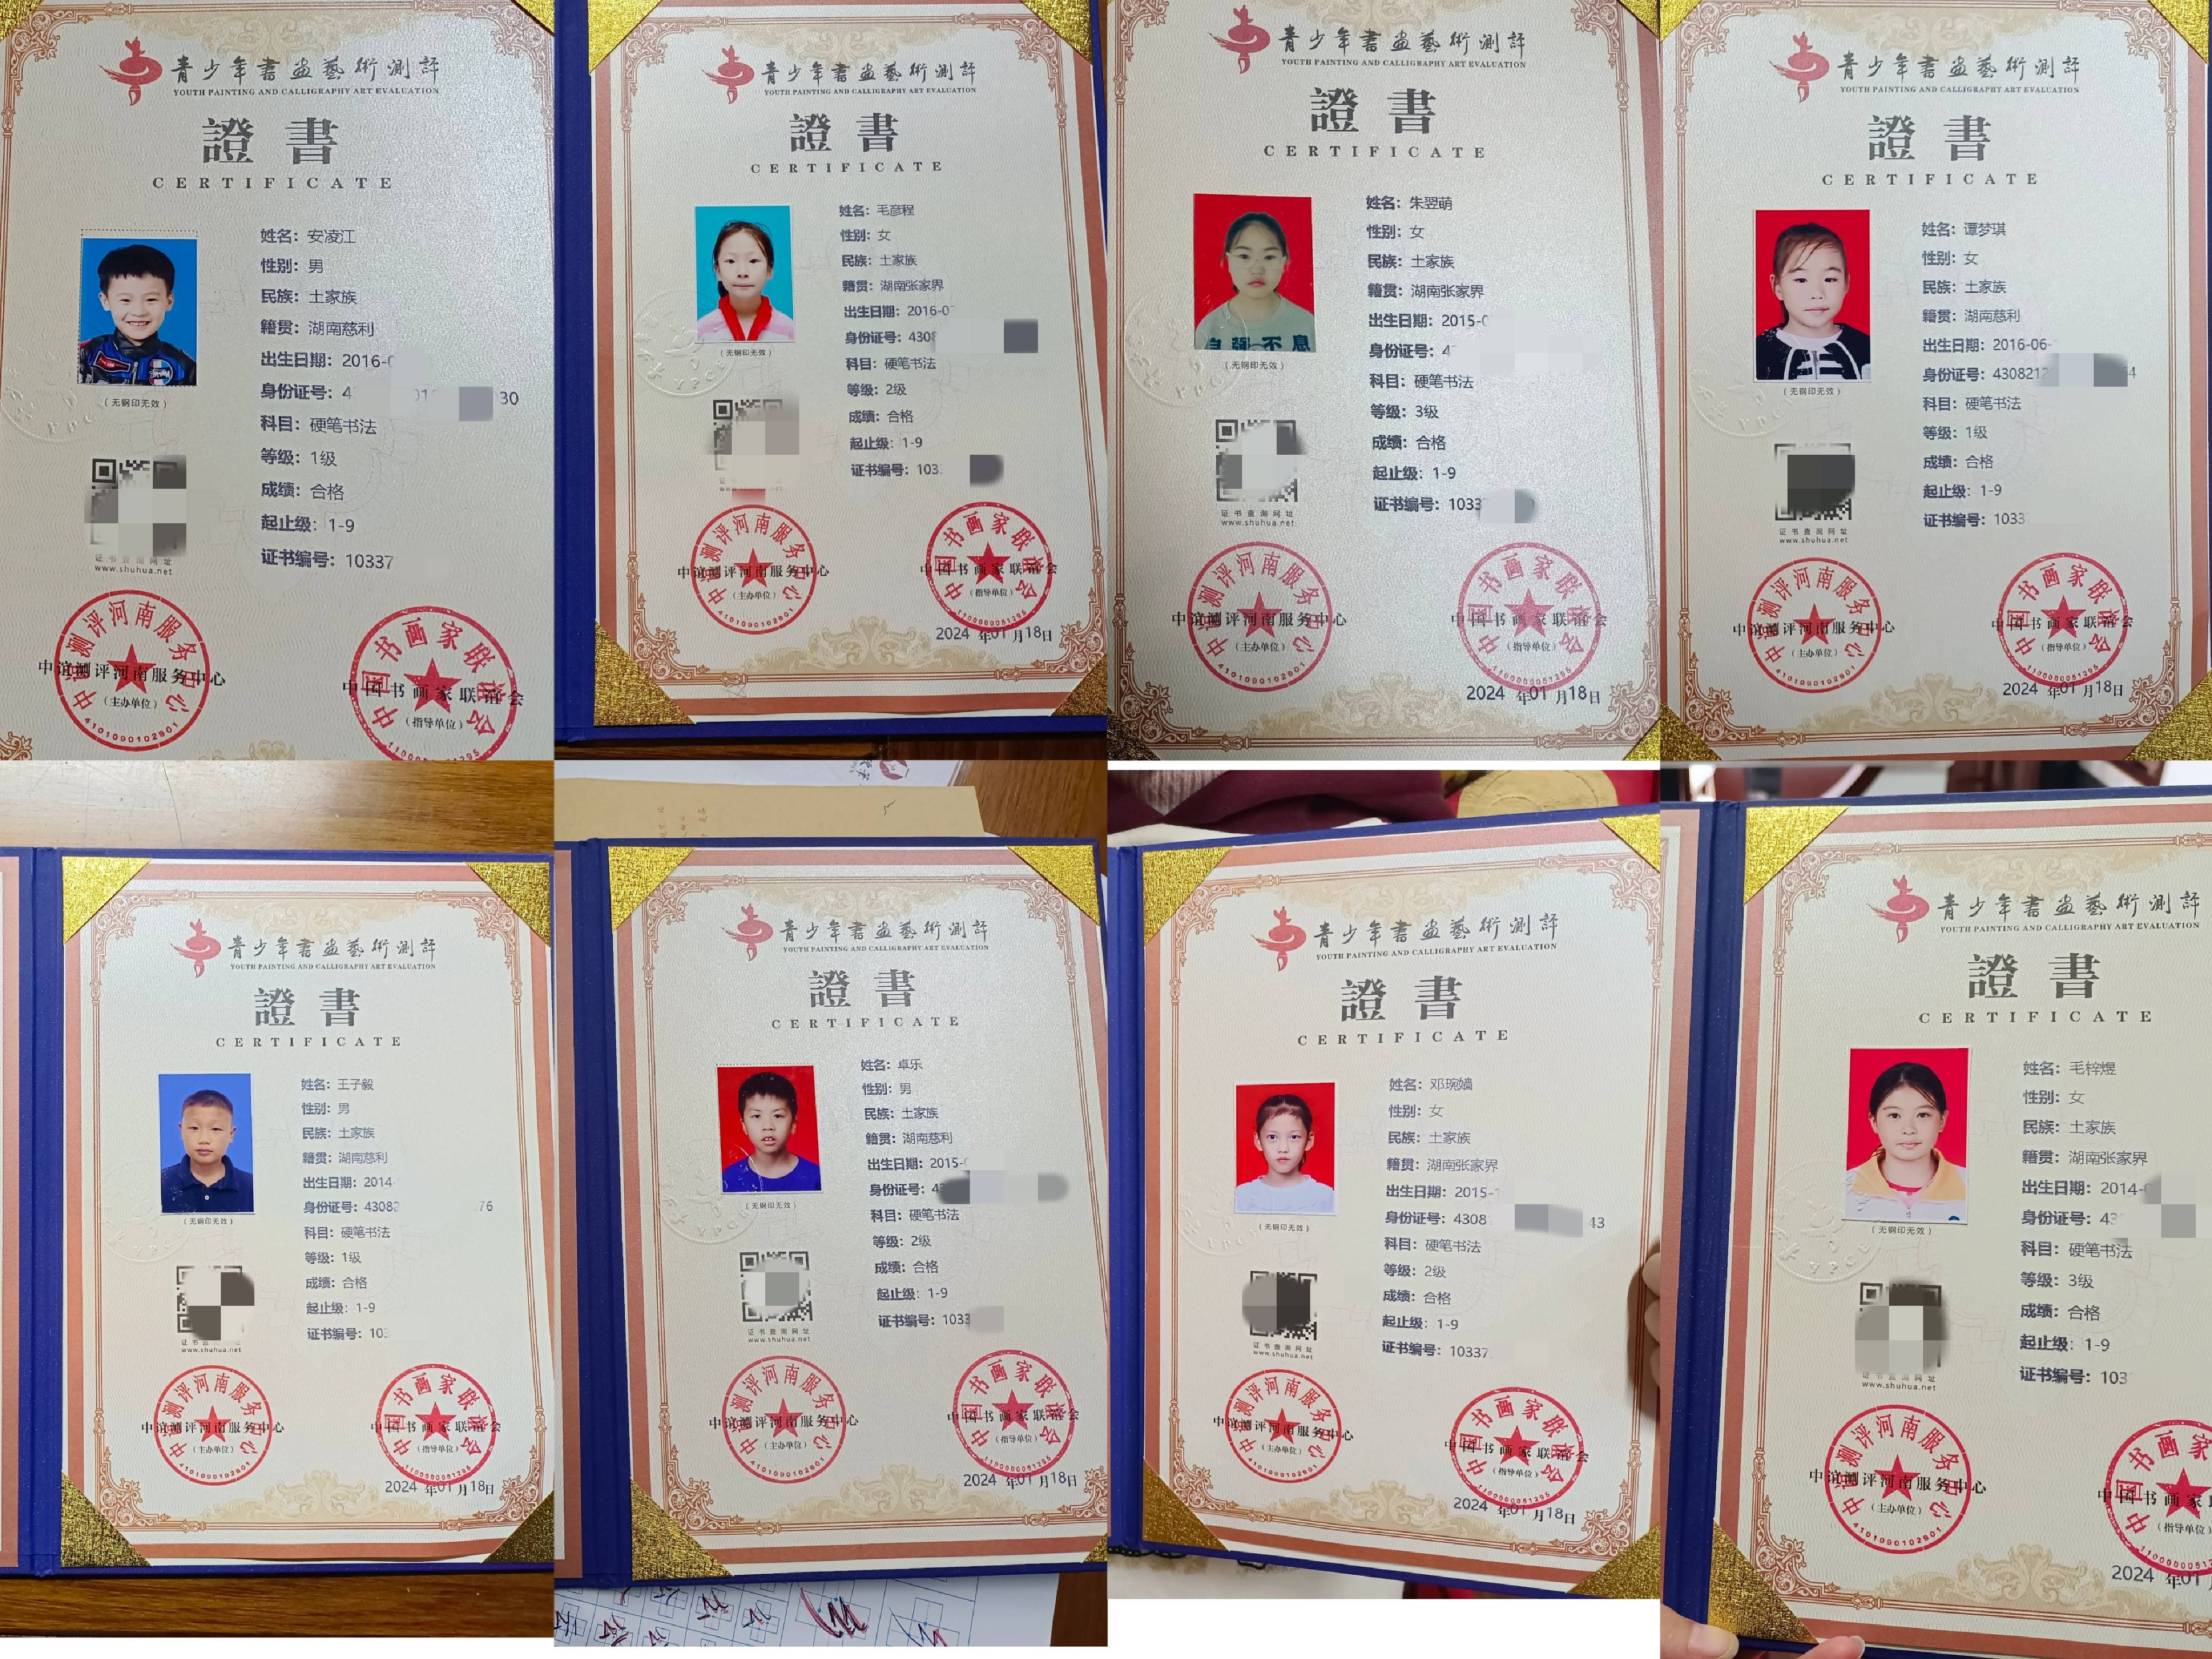 中国书画等级考试证书图片